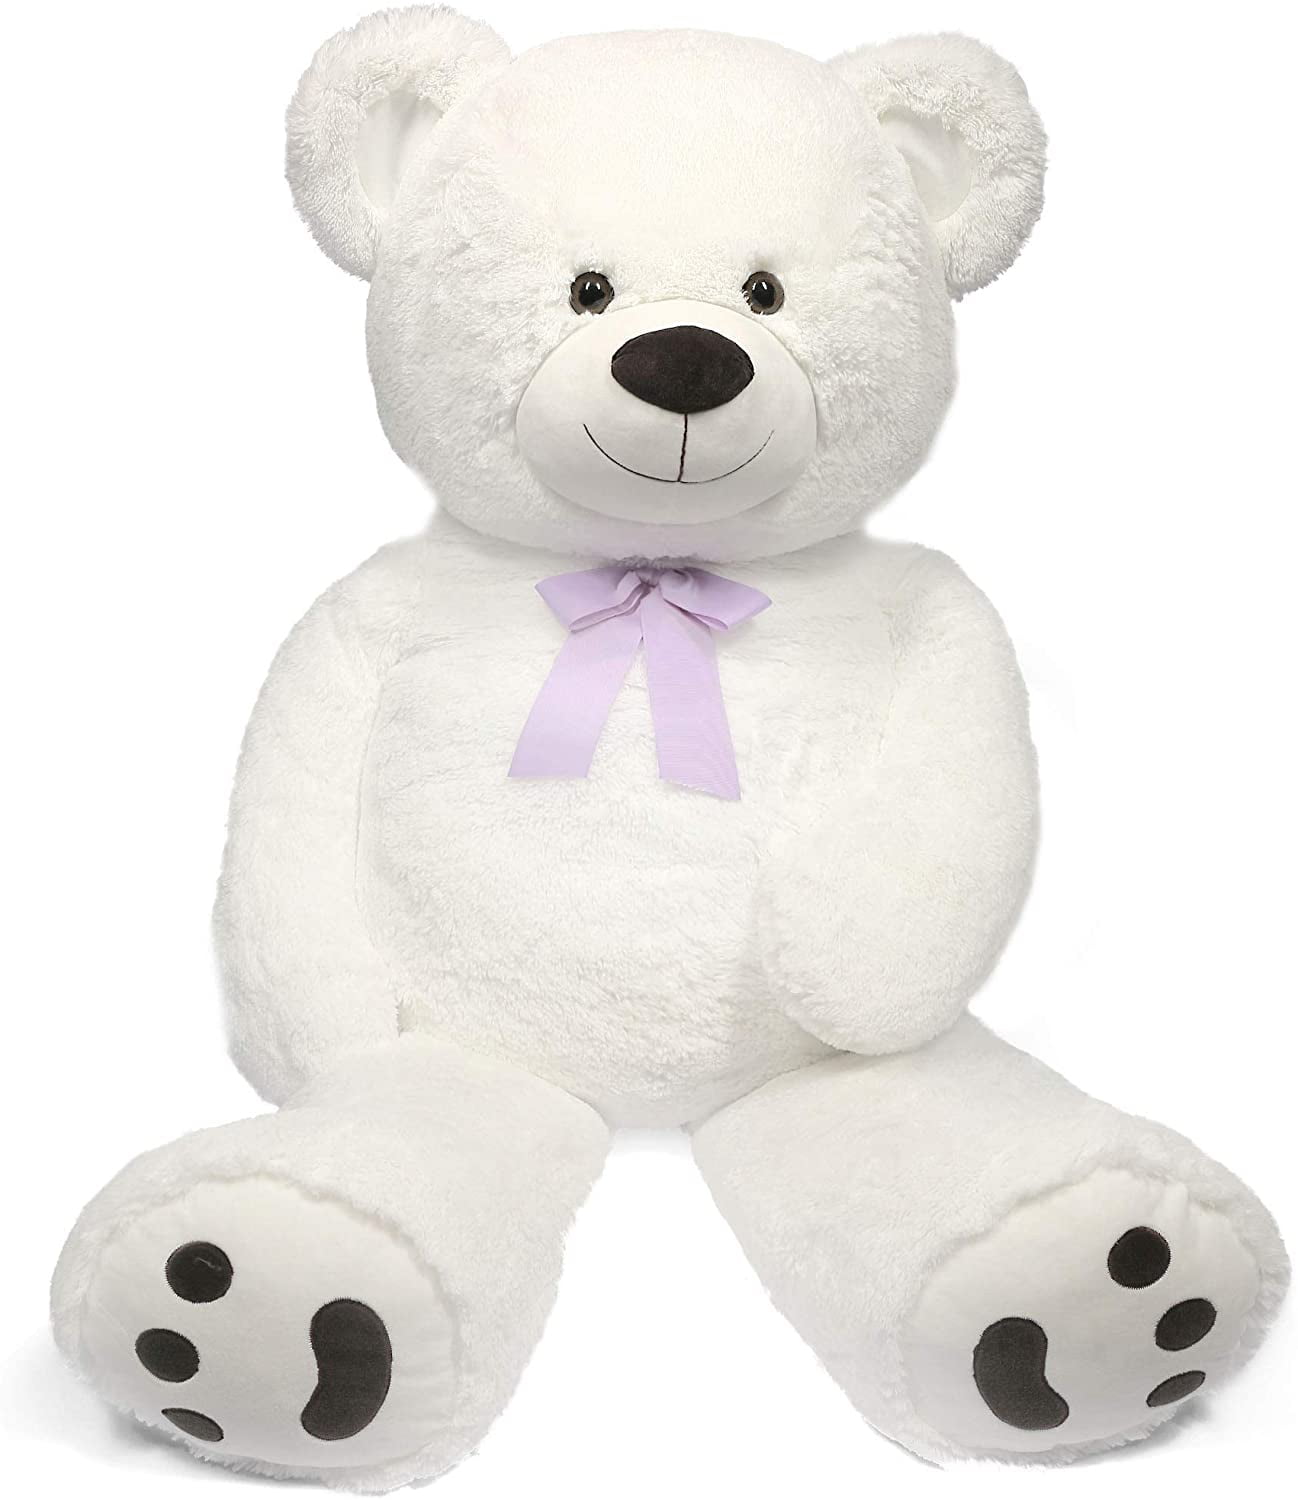 MAX NEW Teddy Bear Gift Present Birthday Xmas Cute And Cuddly 